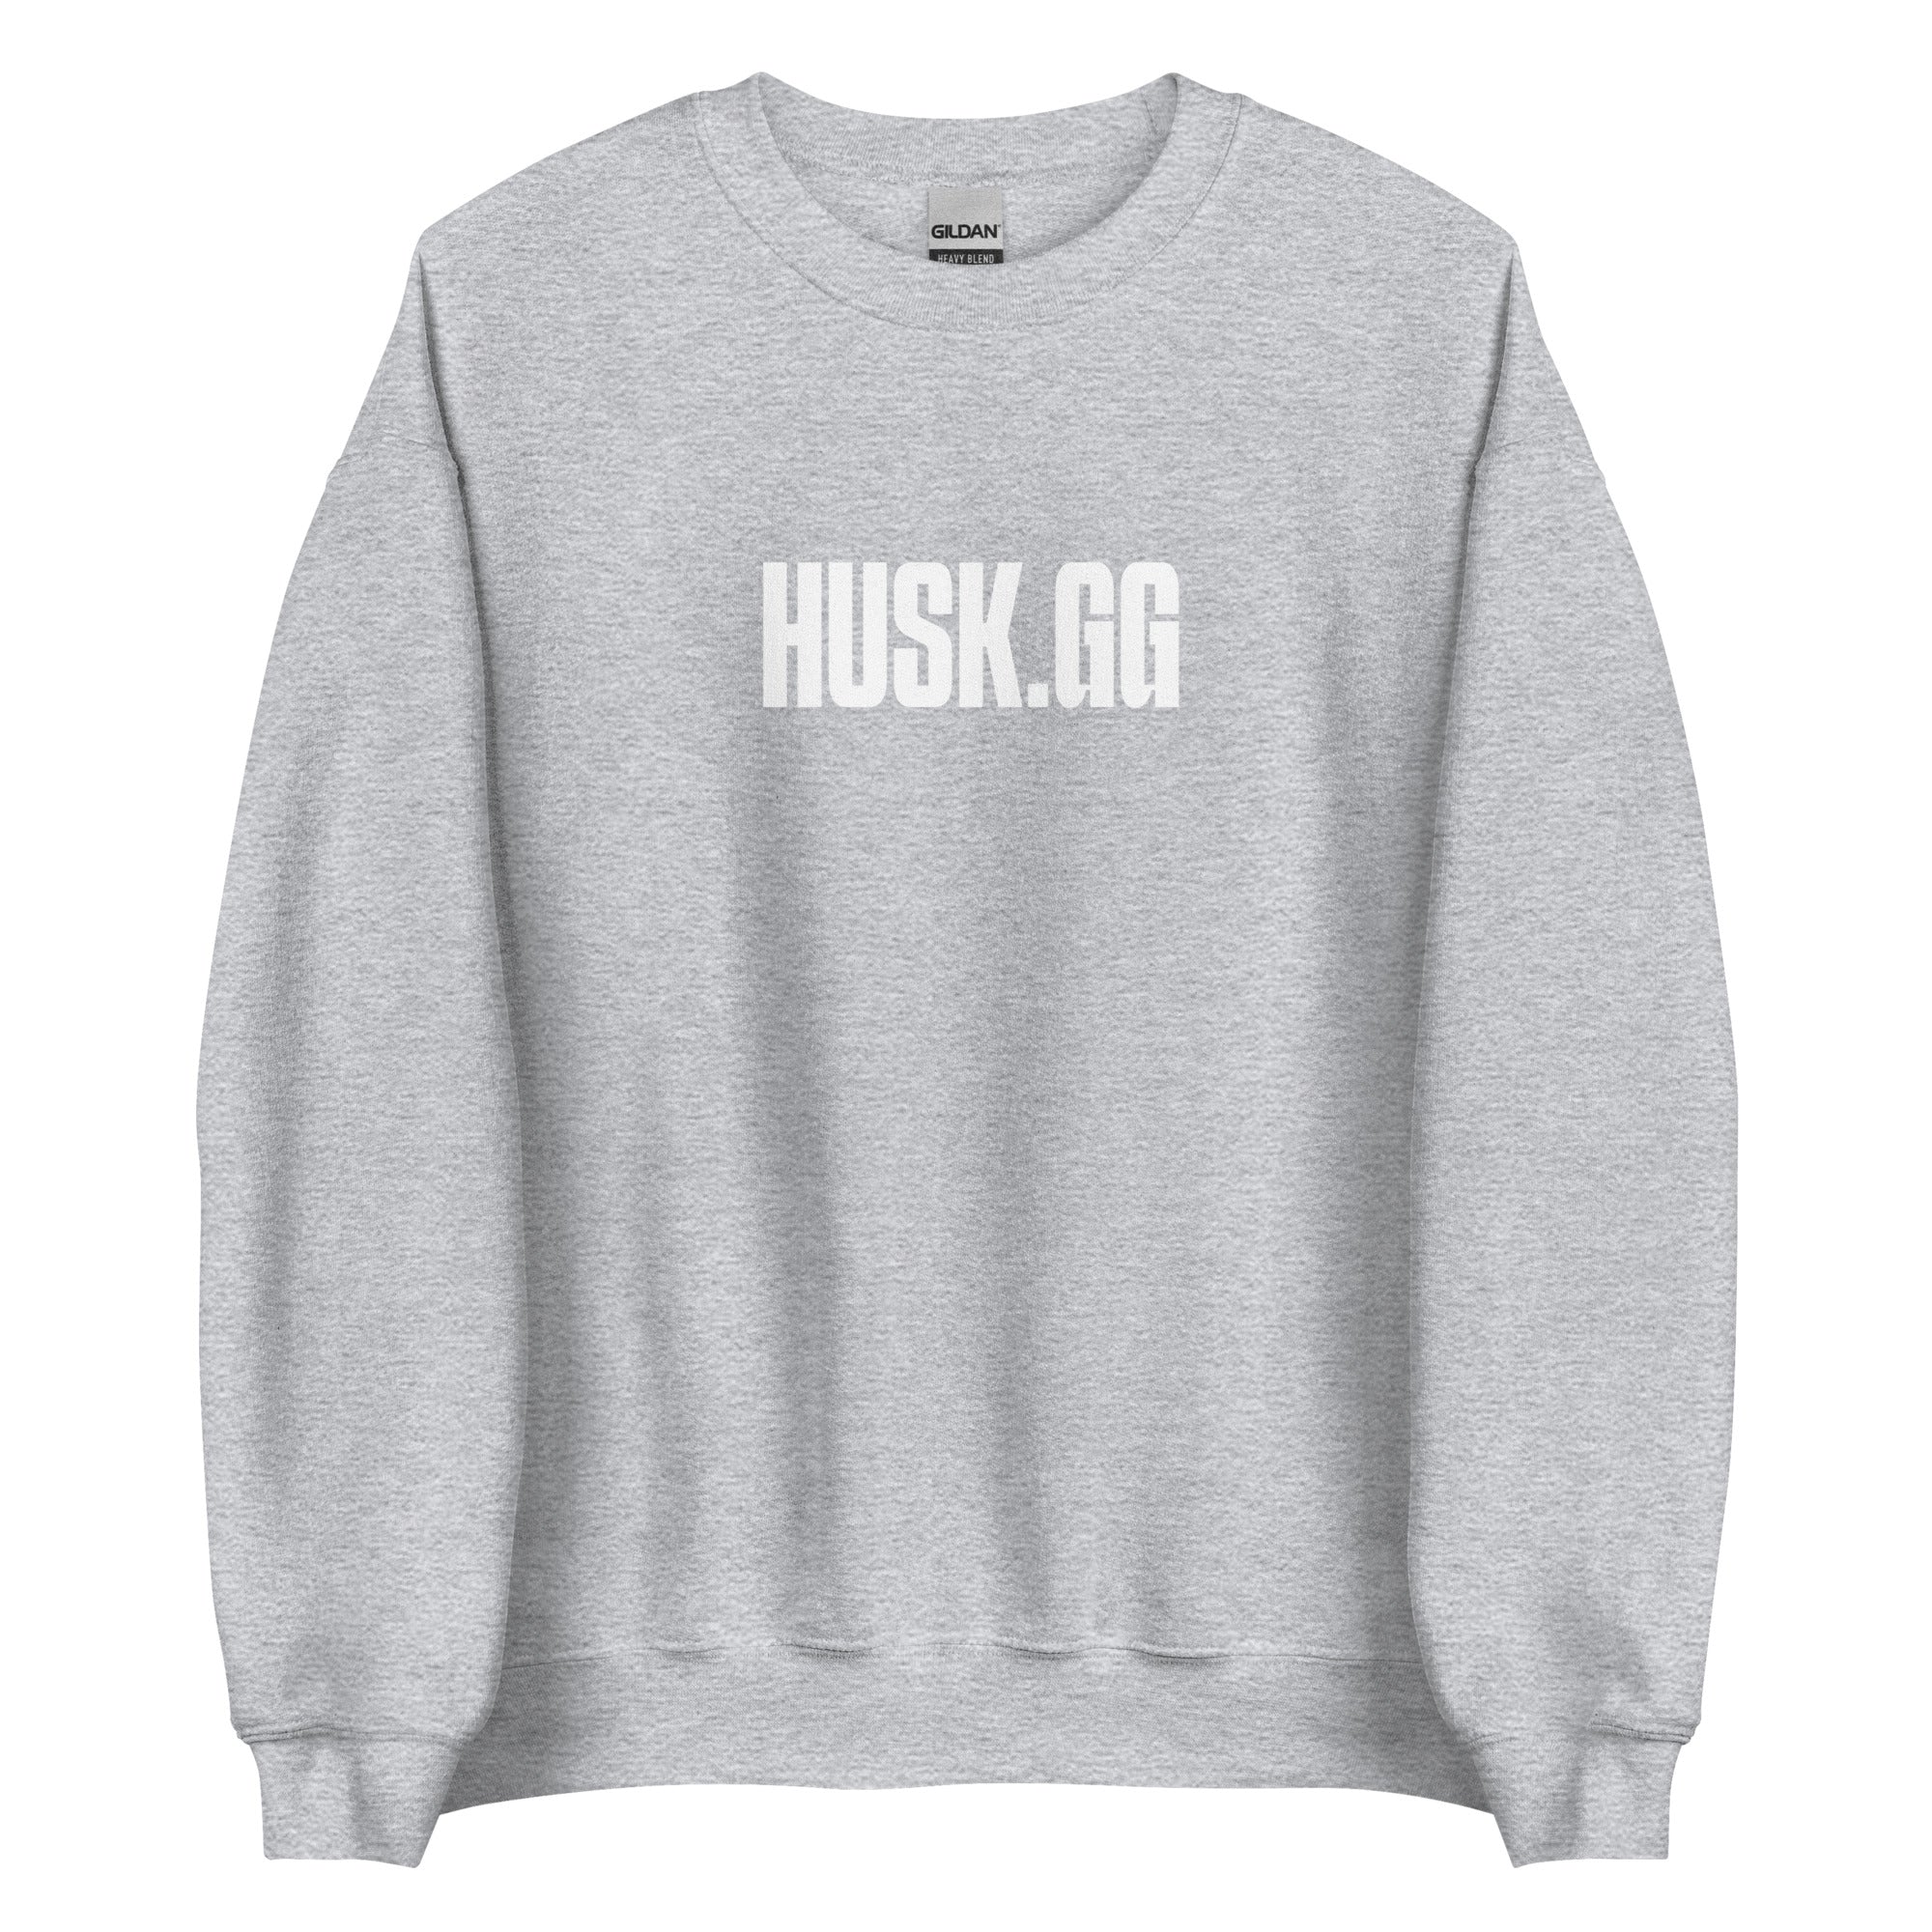 Husk.gg Big Print Sweatshirt